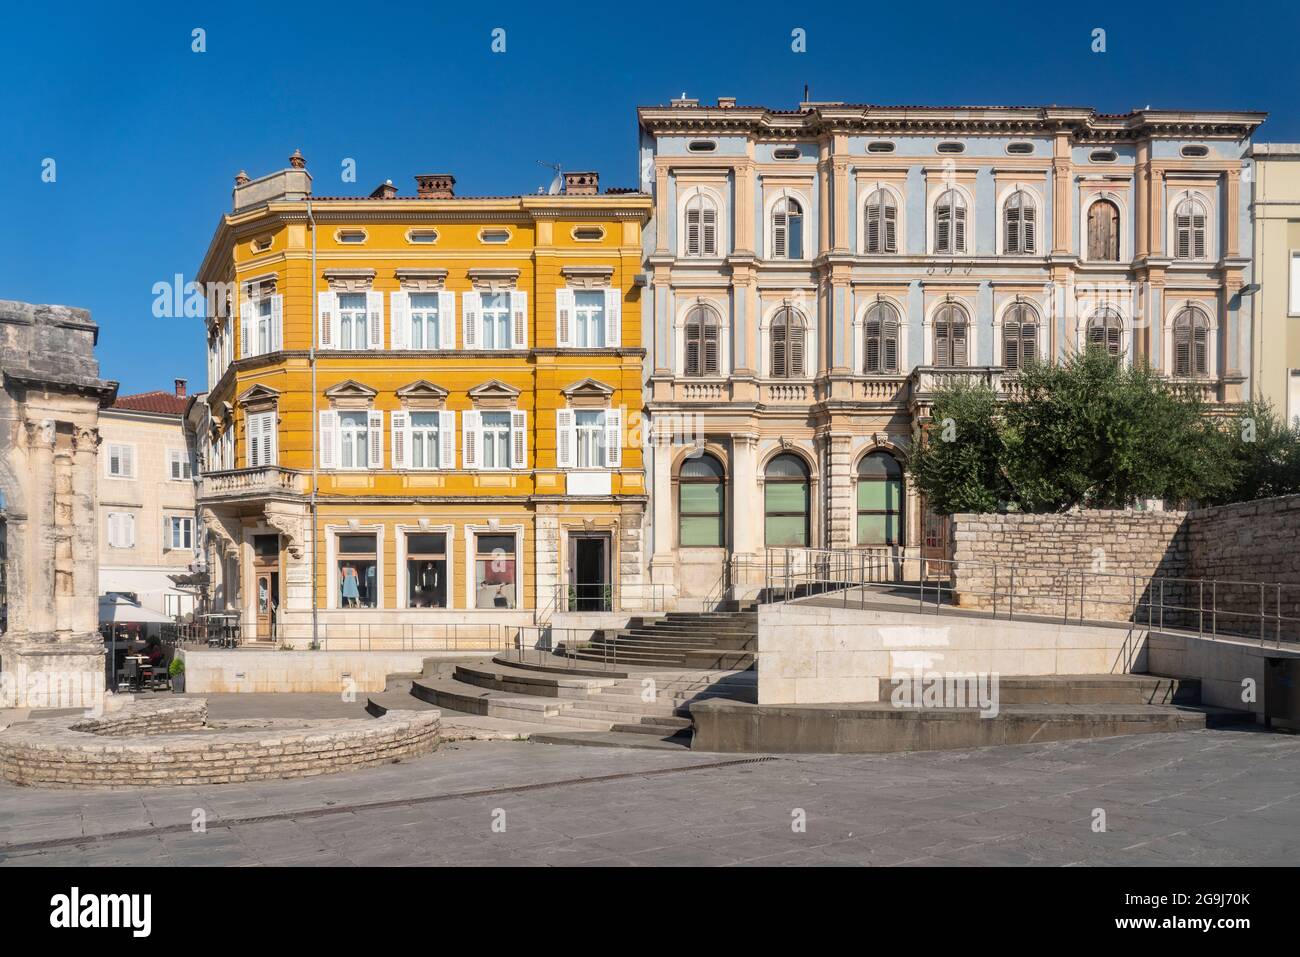 Croatia, Istria, Pula, Portarata Square in old town Stock Photo